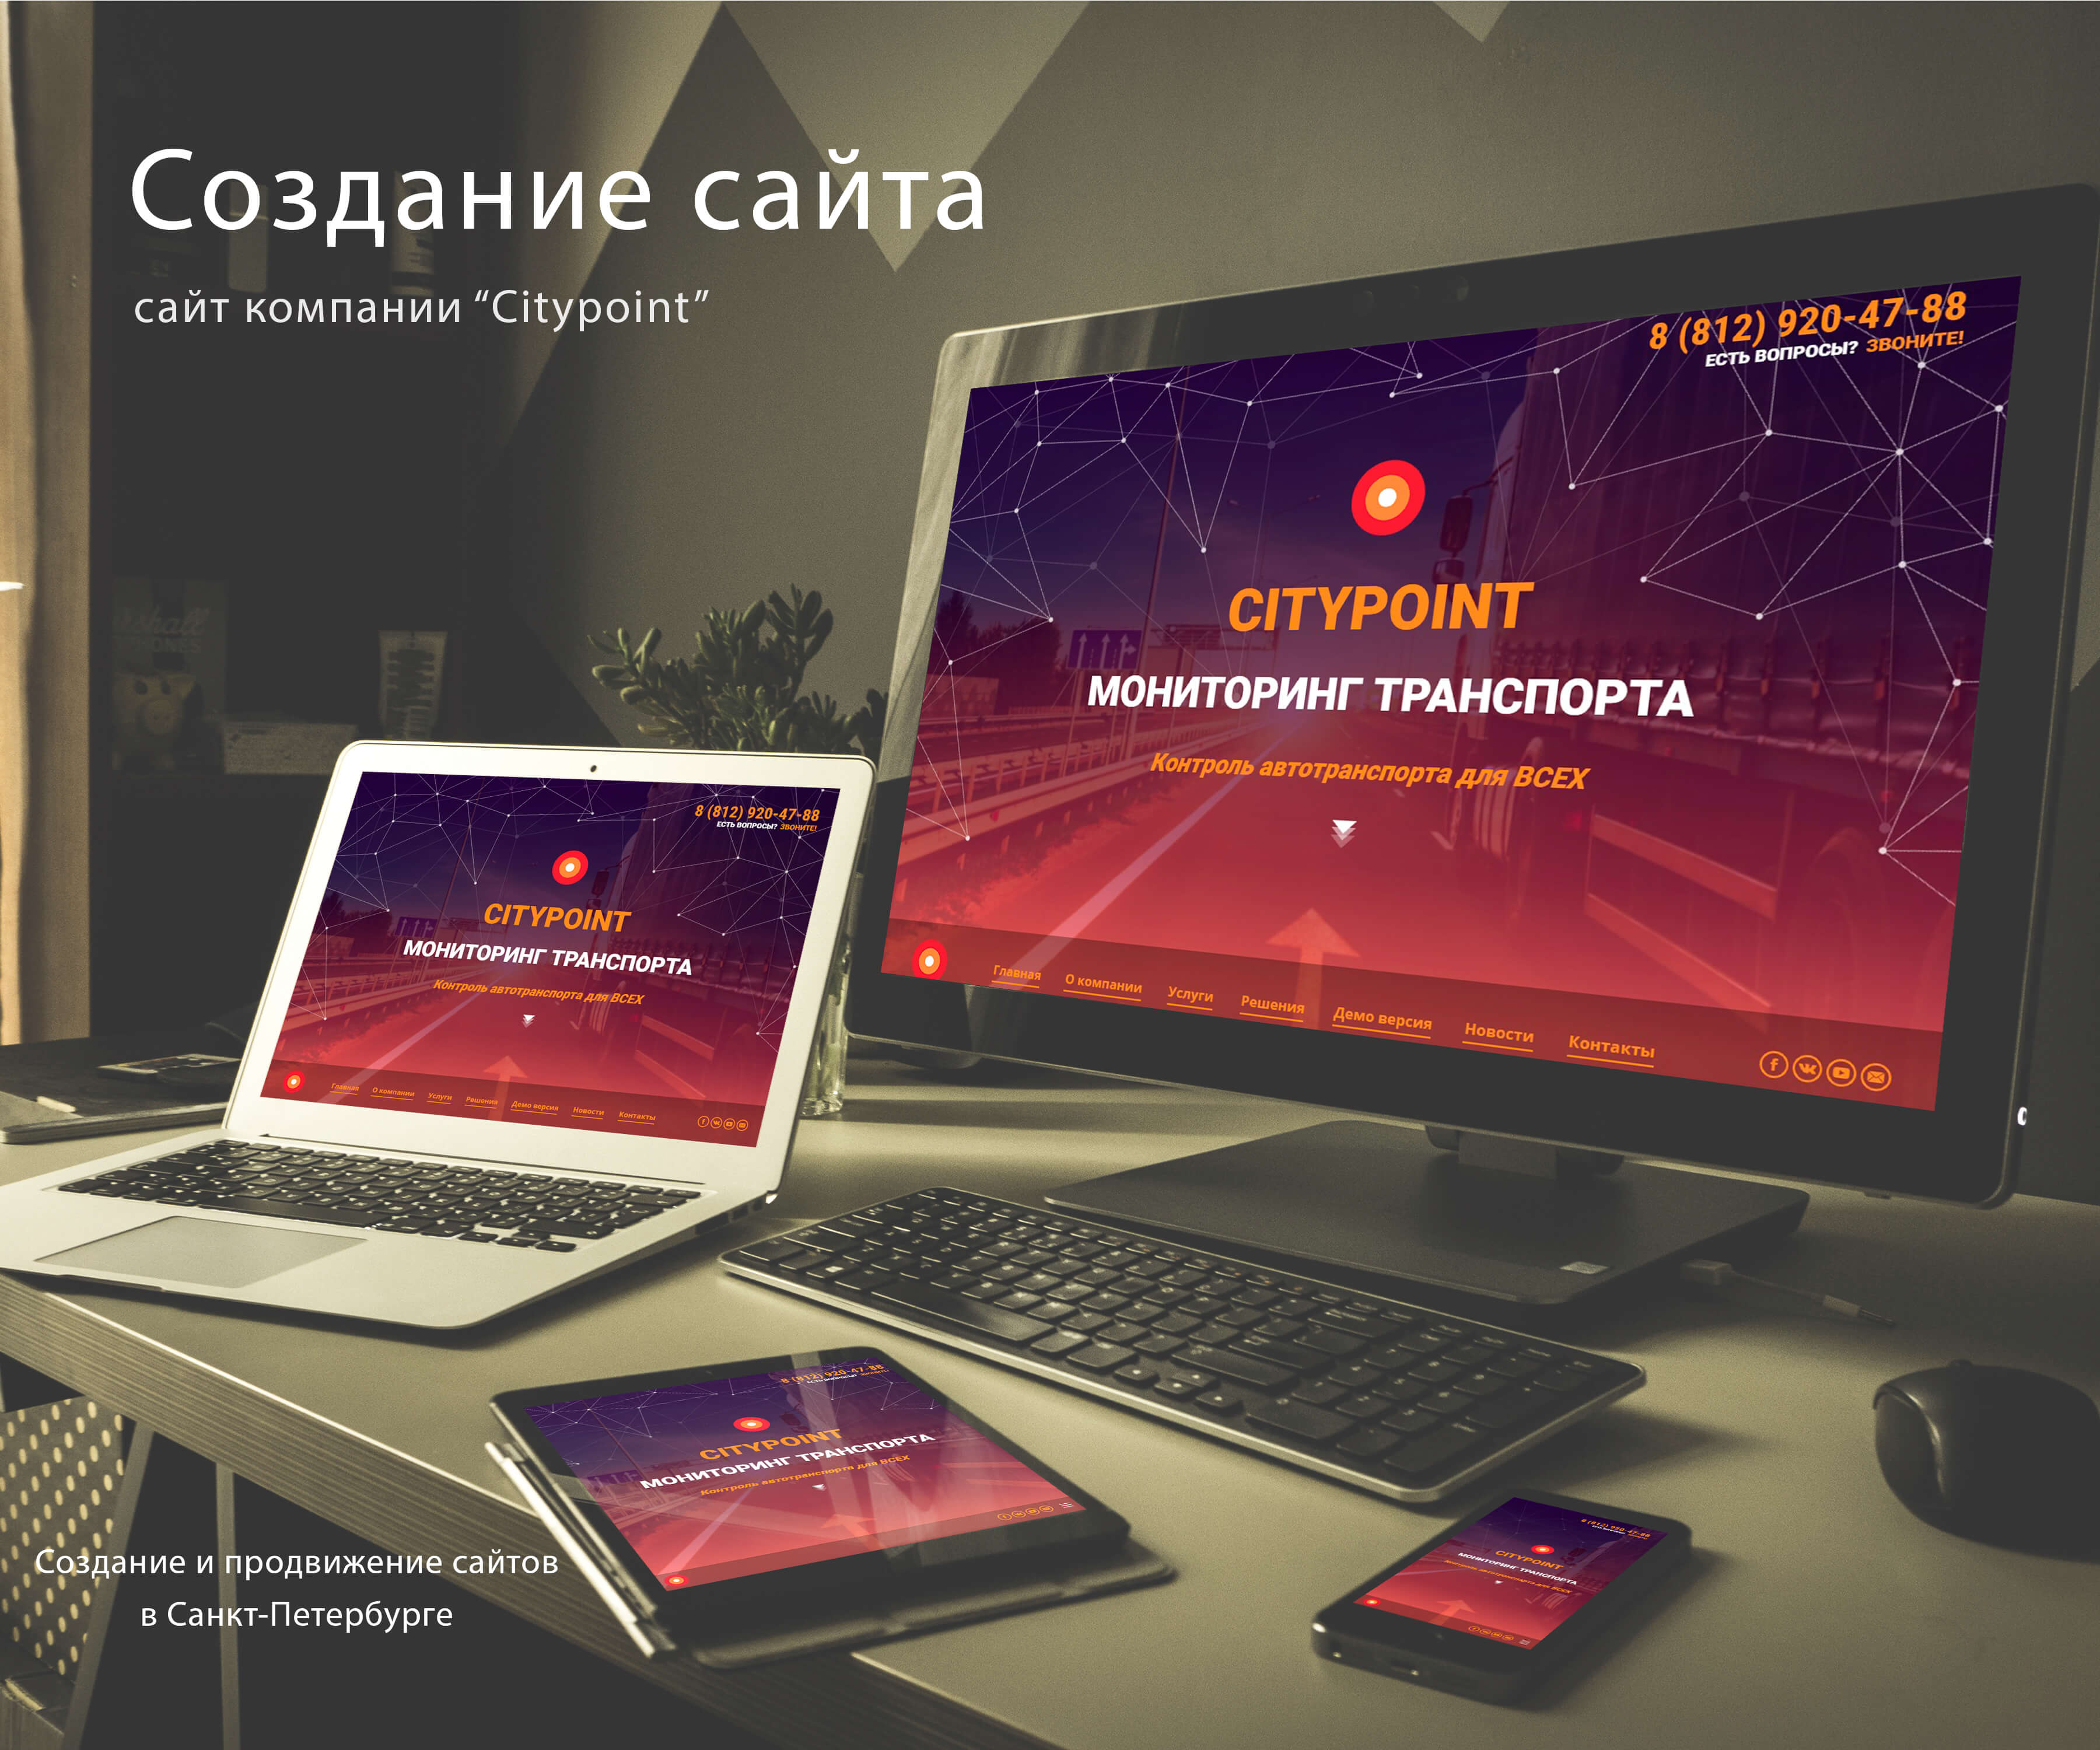 Разработка веб сайта в москве многие